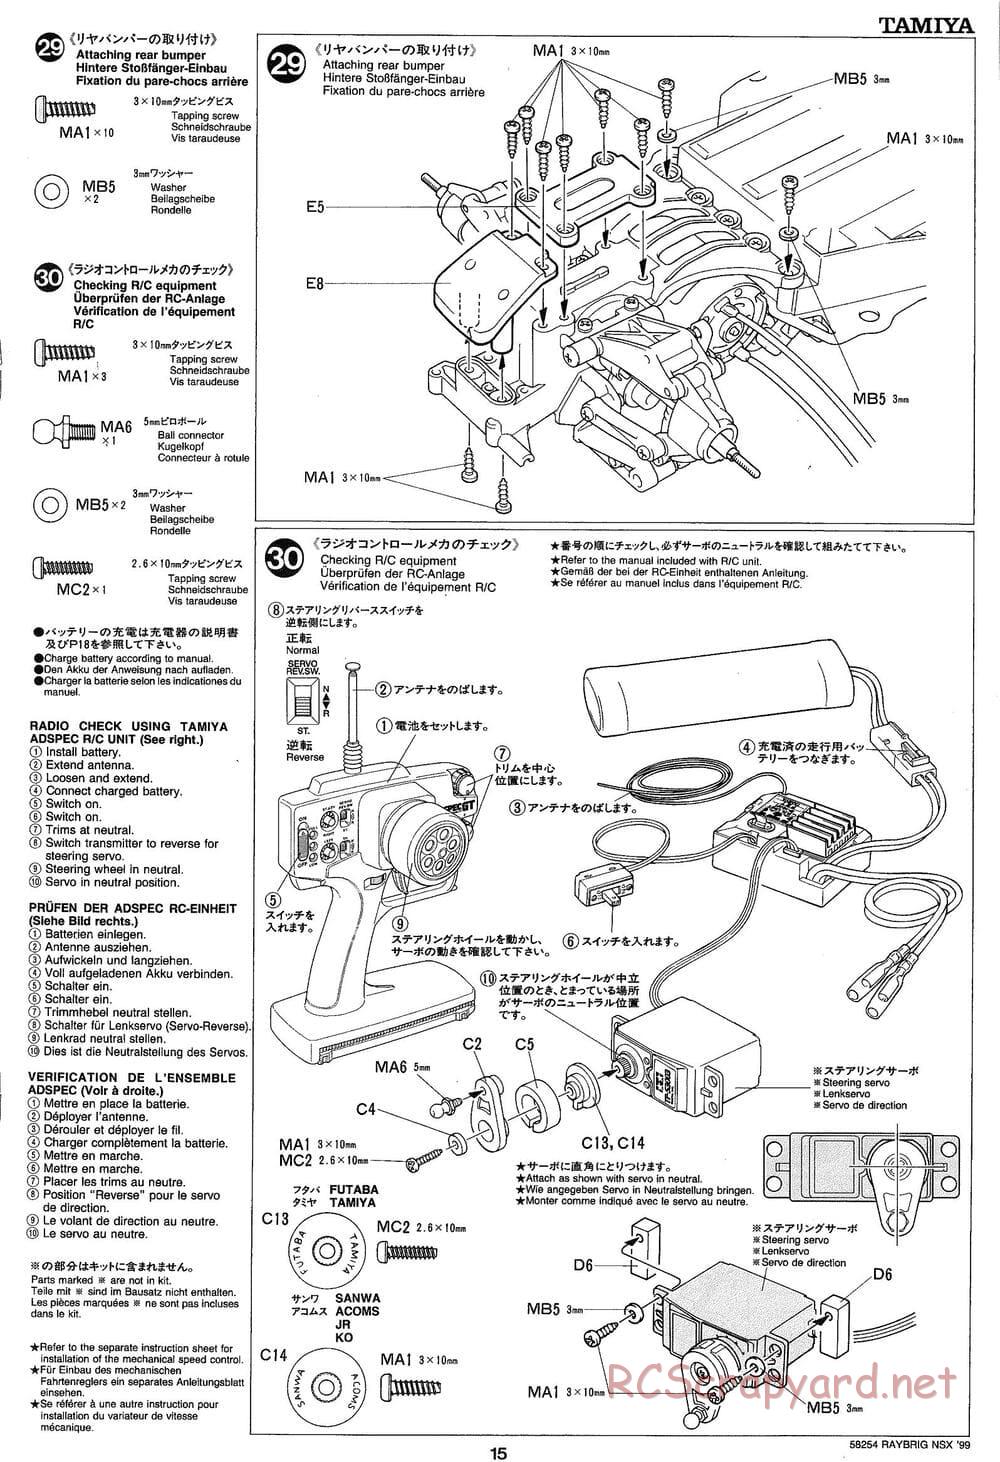 Tamiya - Raybrig NSX 99 - TA-03R Chassis - Manual - Page 15